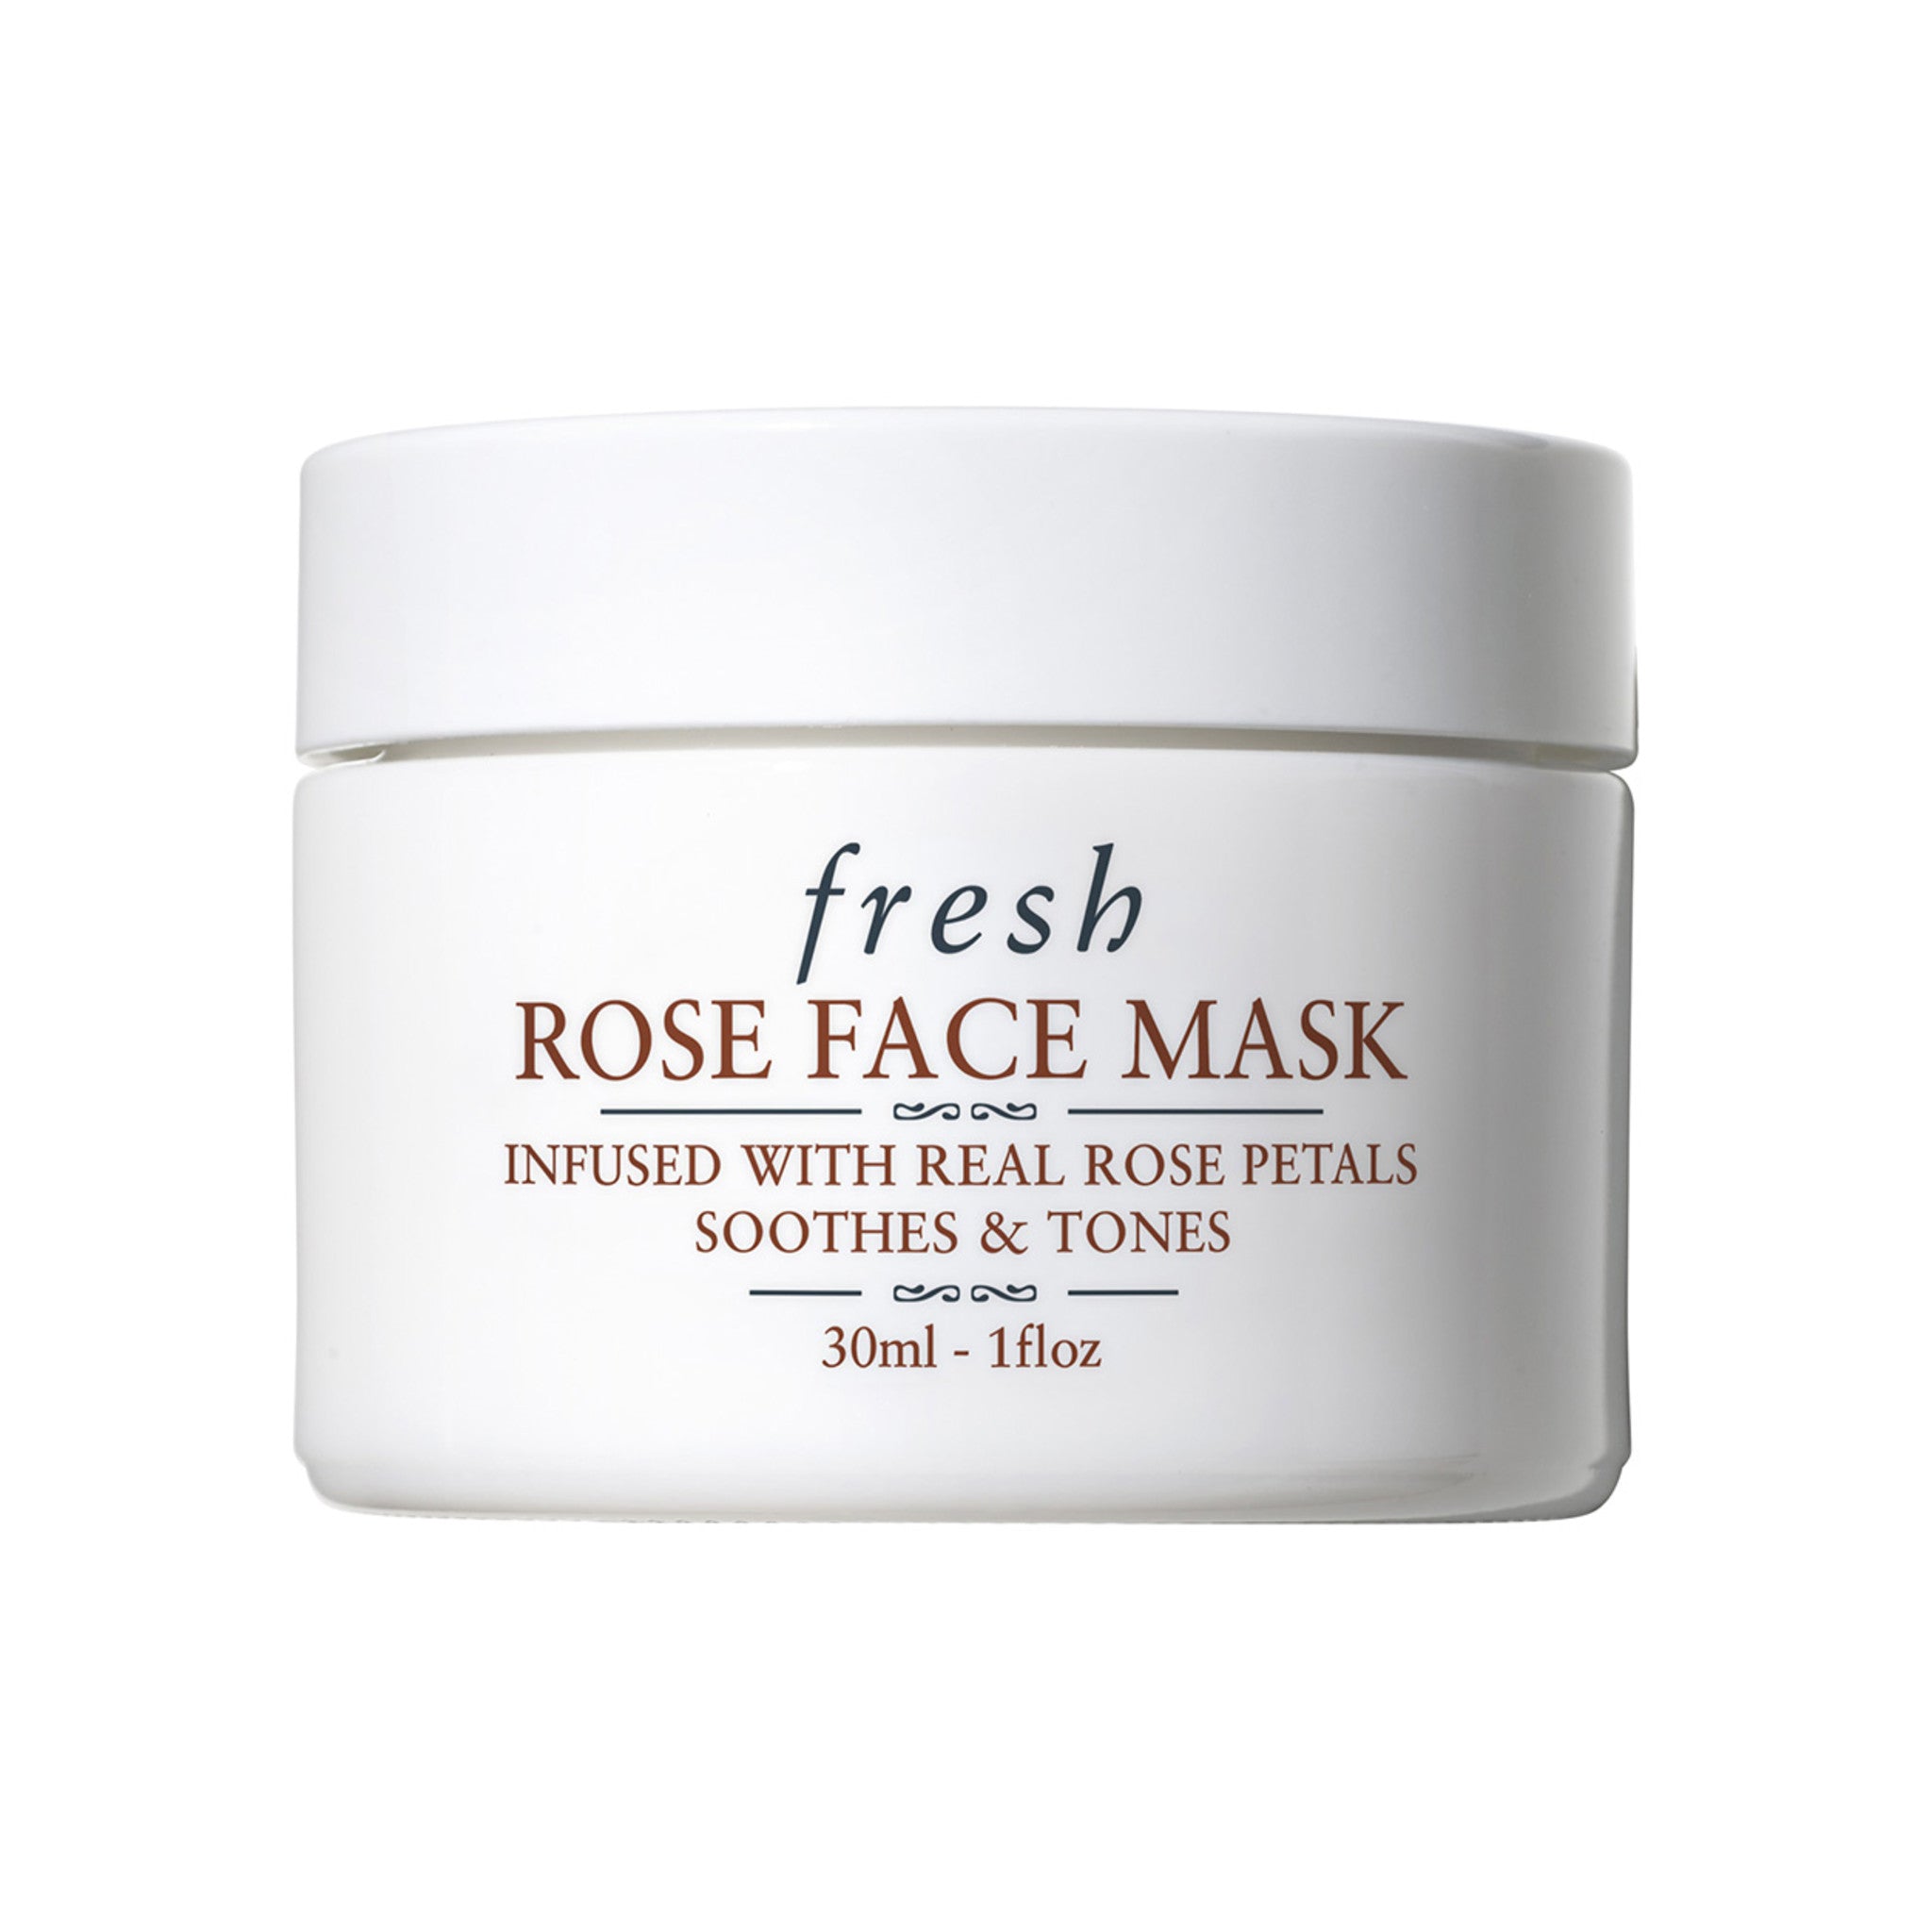 Fresh Rose Face Mask Size variant: 30 ml main image.